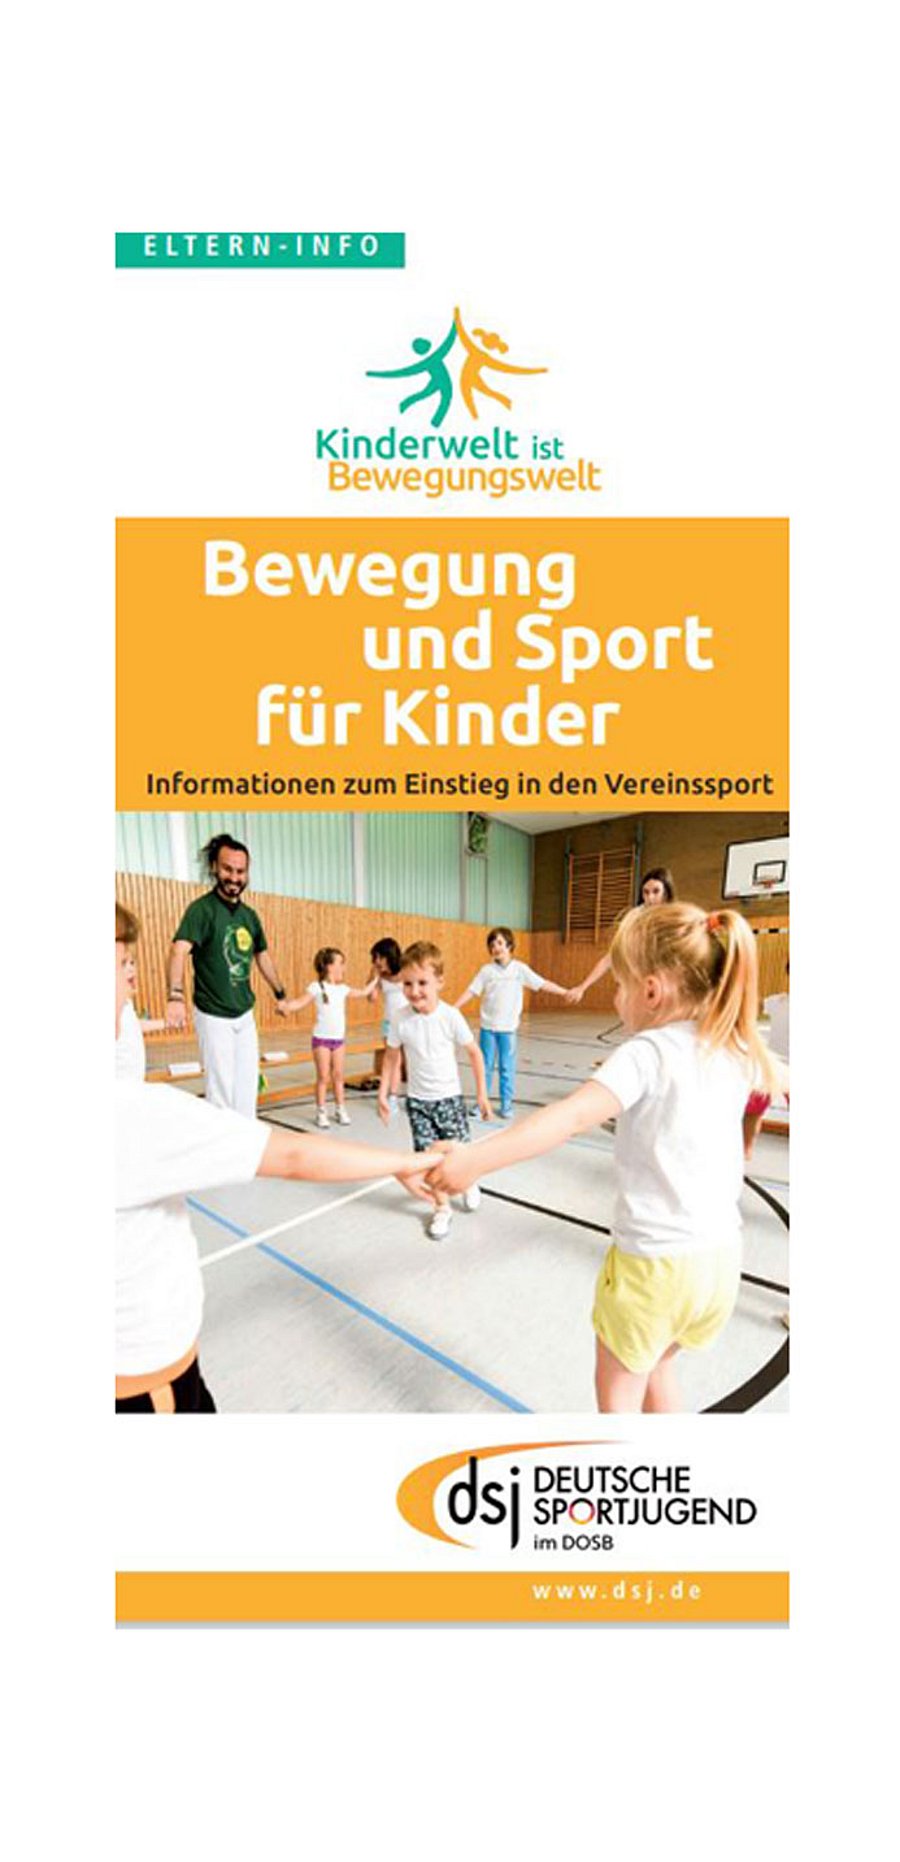 Cover der Broschüre Elterninfo "Bewegung und Sport" vom dsj.de